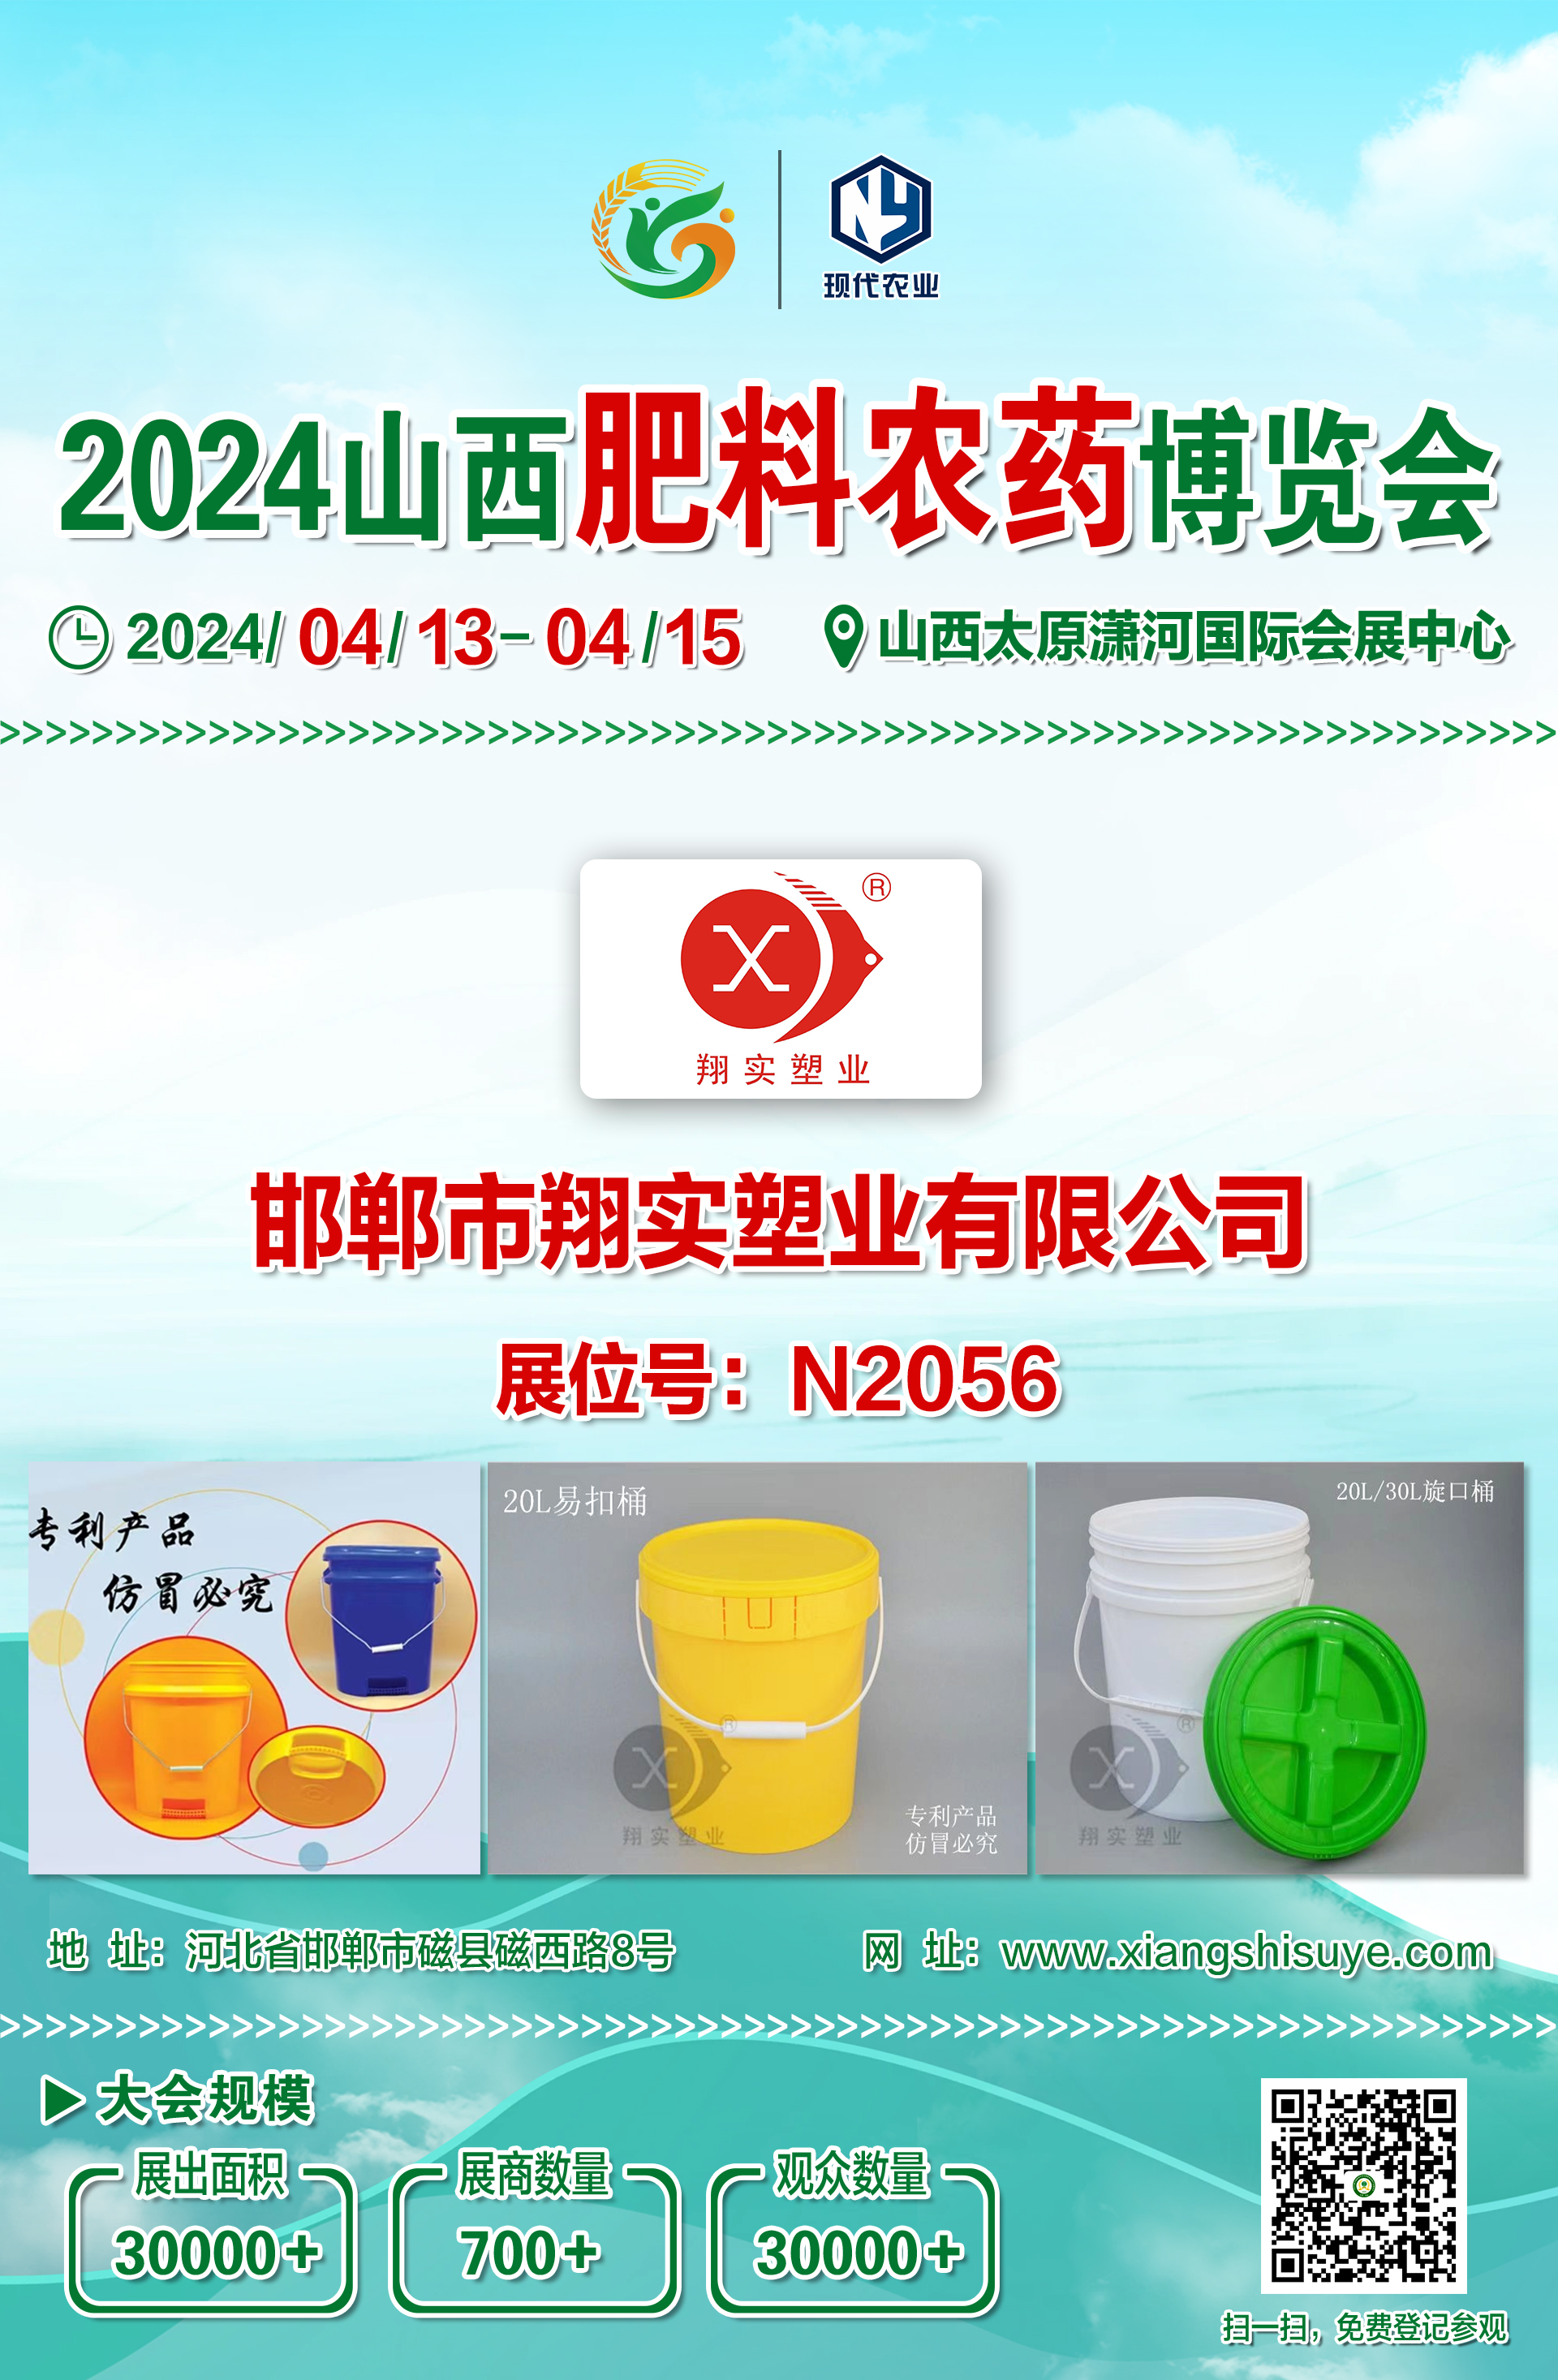 邯郸市翔实塑业有限公司邀您亮相2024山西肥料农药博览会